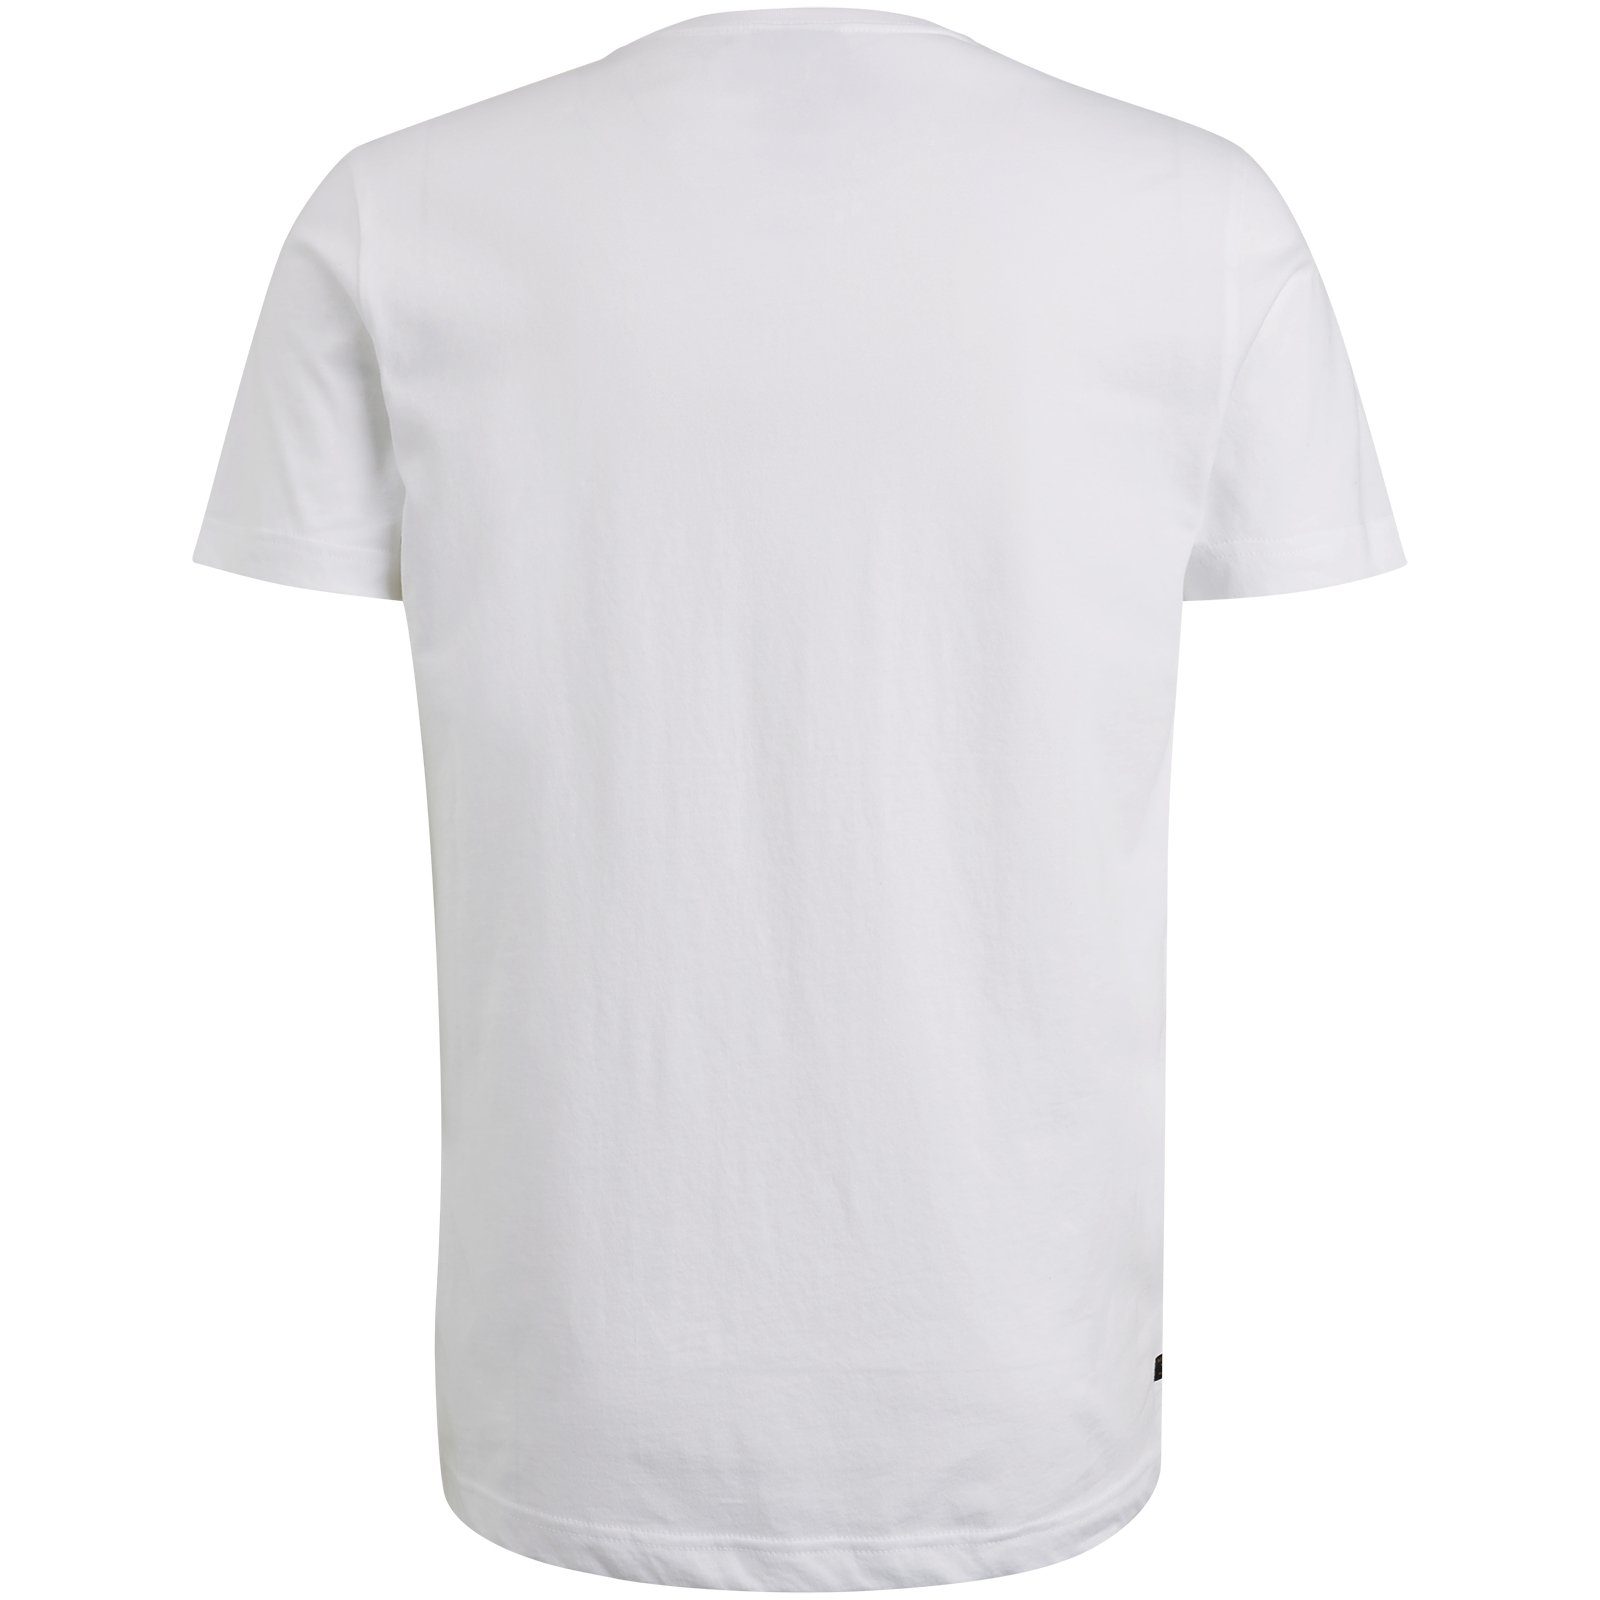 Bright PME White T-Shirt LEGEND